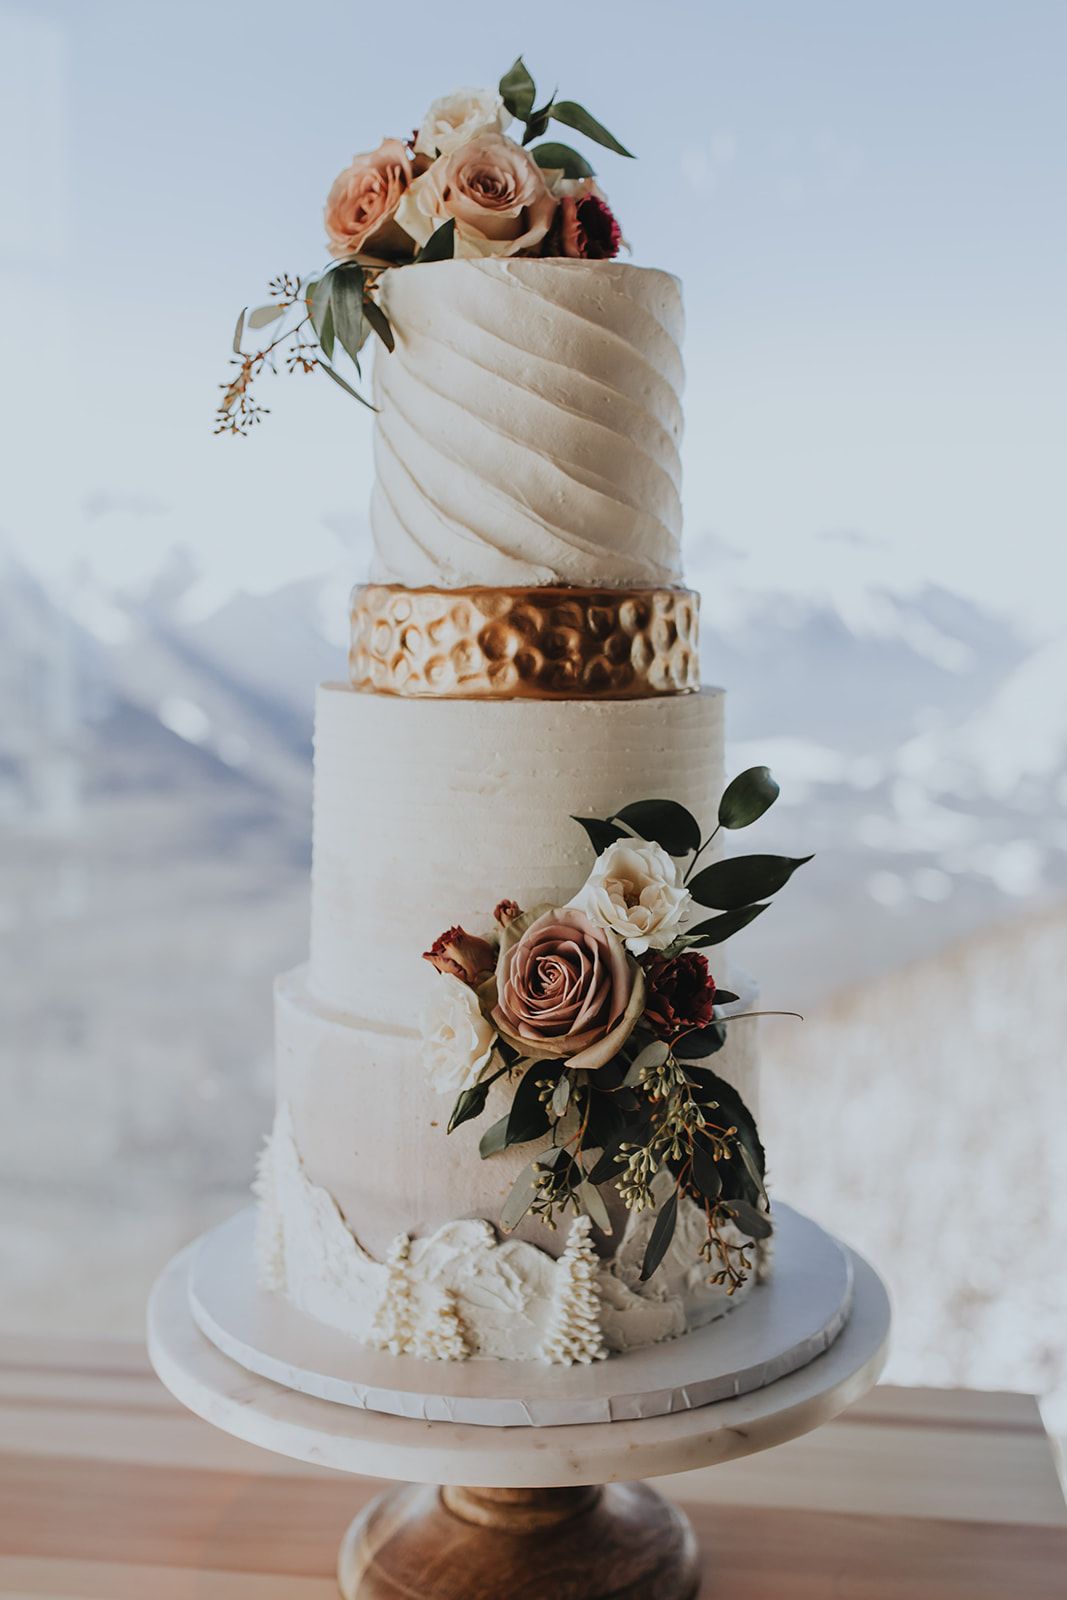 Sky Bistro Banff Wedding - Featured on Bronte Bride, wedding cake, rocky mountain wedding